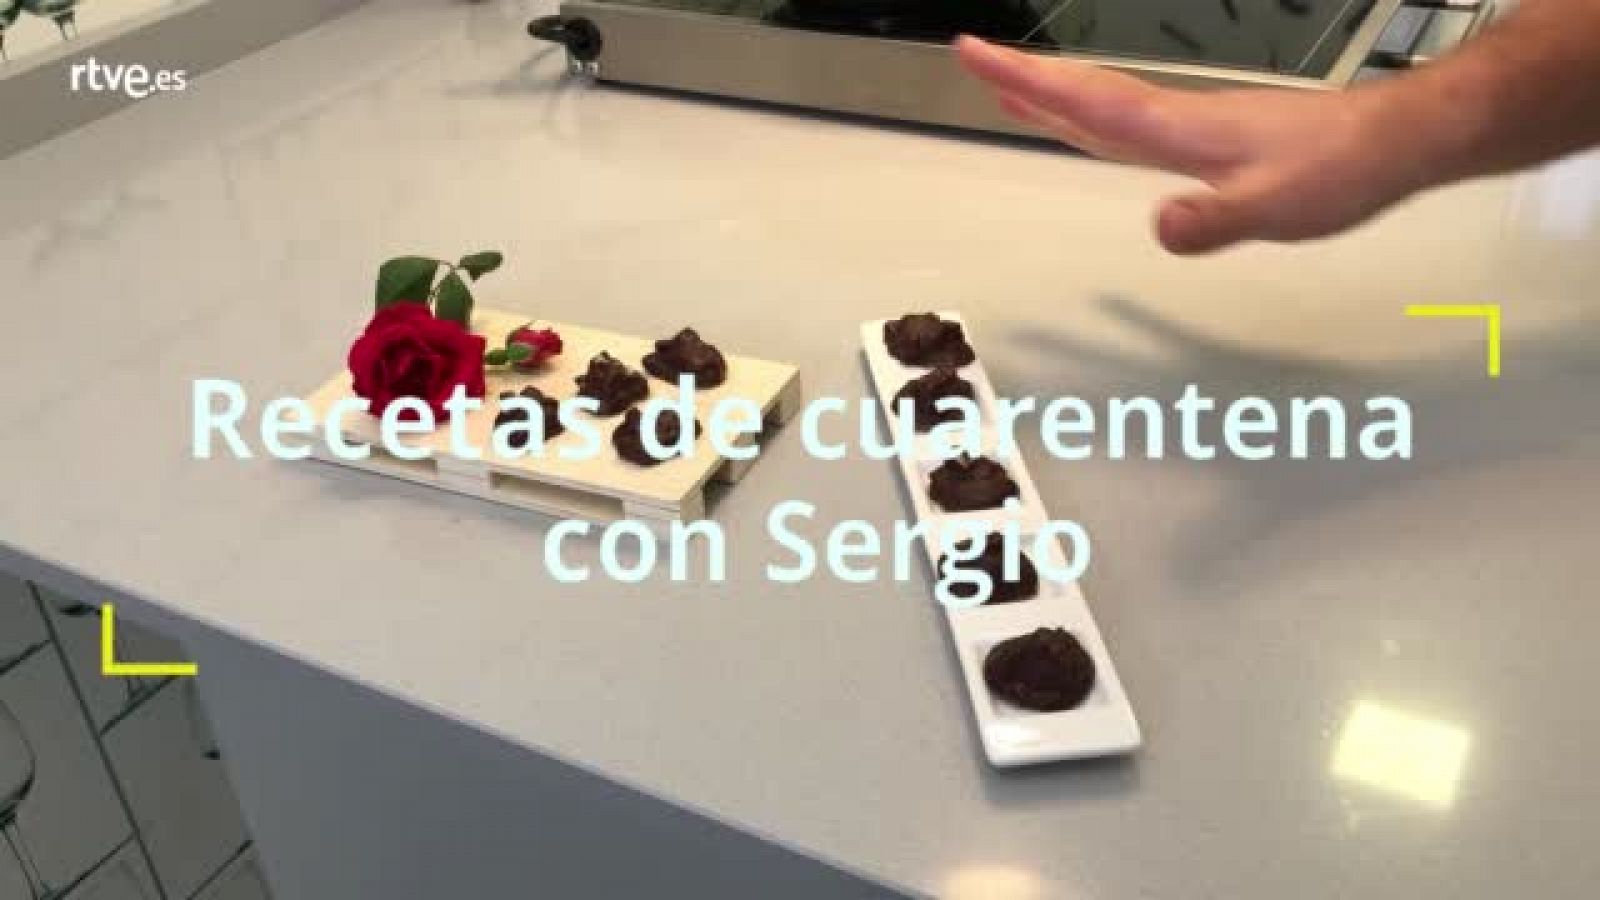 Recetas | Truco para trabajar el chocolate - RTVE.es